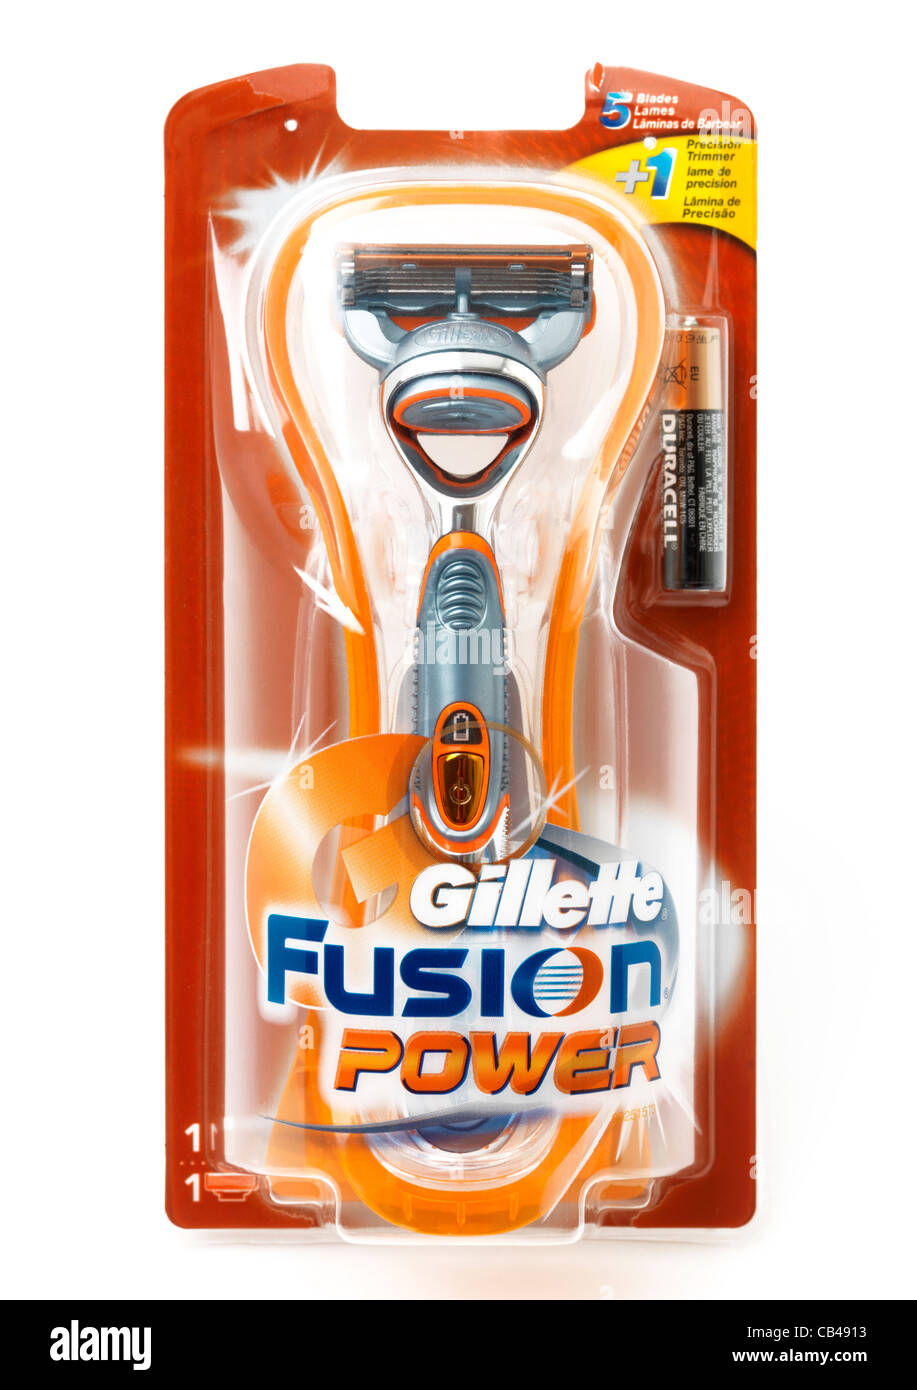 Gillette Fusion Power rasoio e la batteria nella confezione Foto Stock